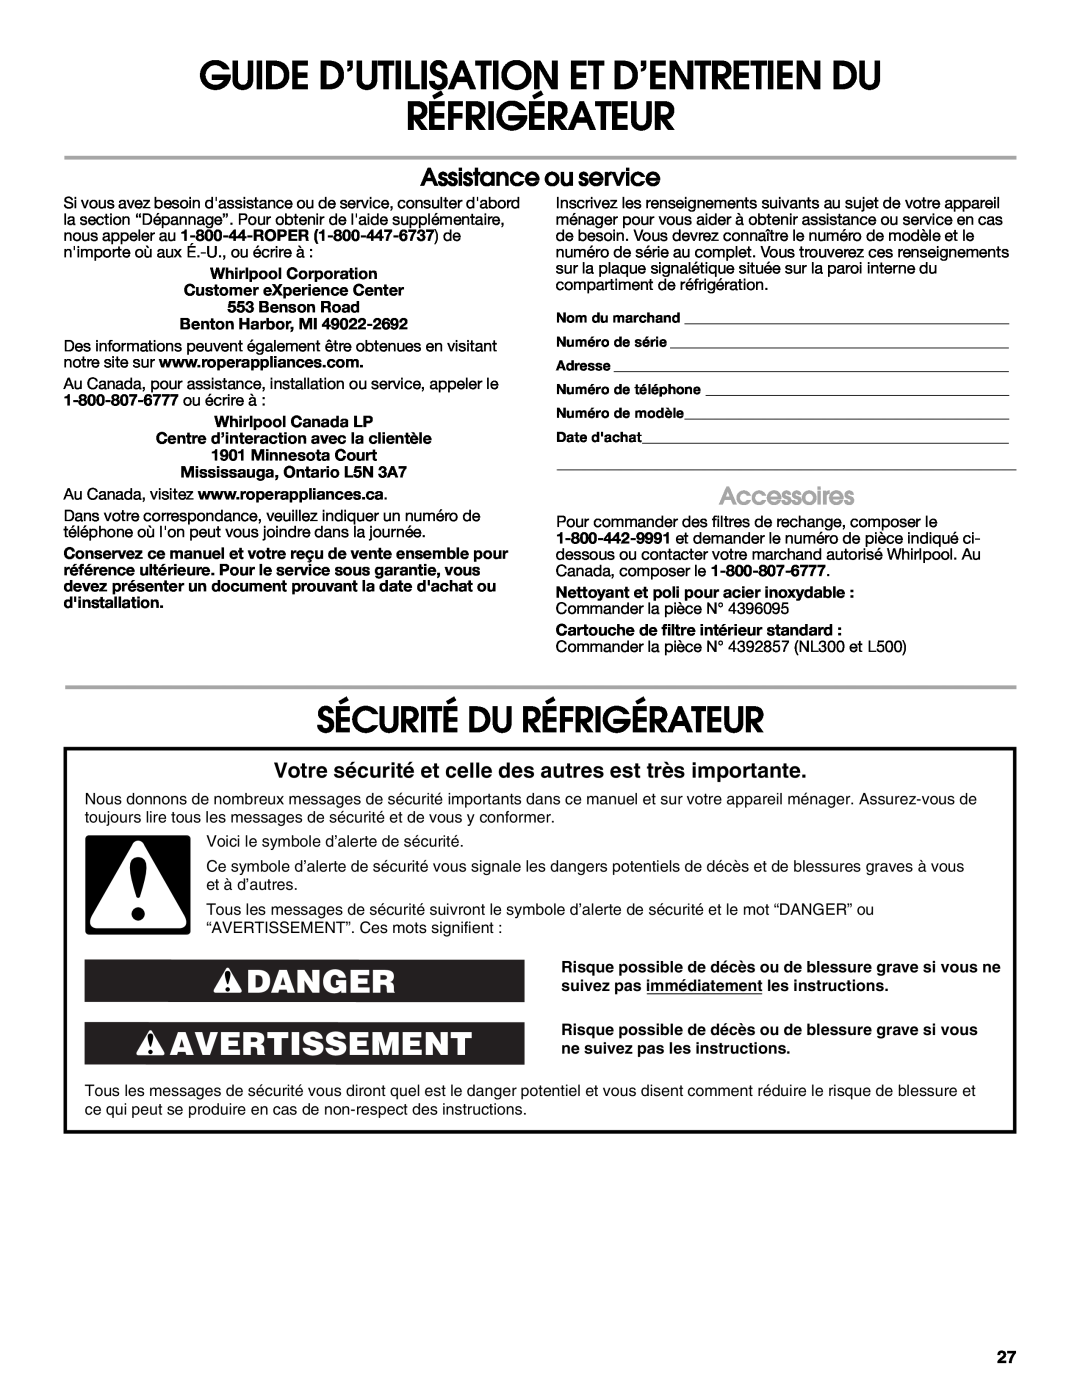 Whirlpool RS22AQXKQ00 warranty Guide D’Utilisation Et D’Entretien Du, Sécurité Du Réfrigérateur, Danger Avertissement 